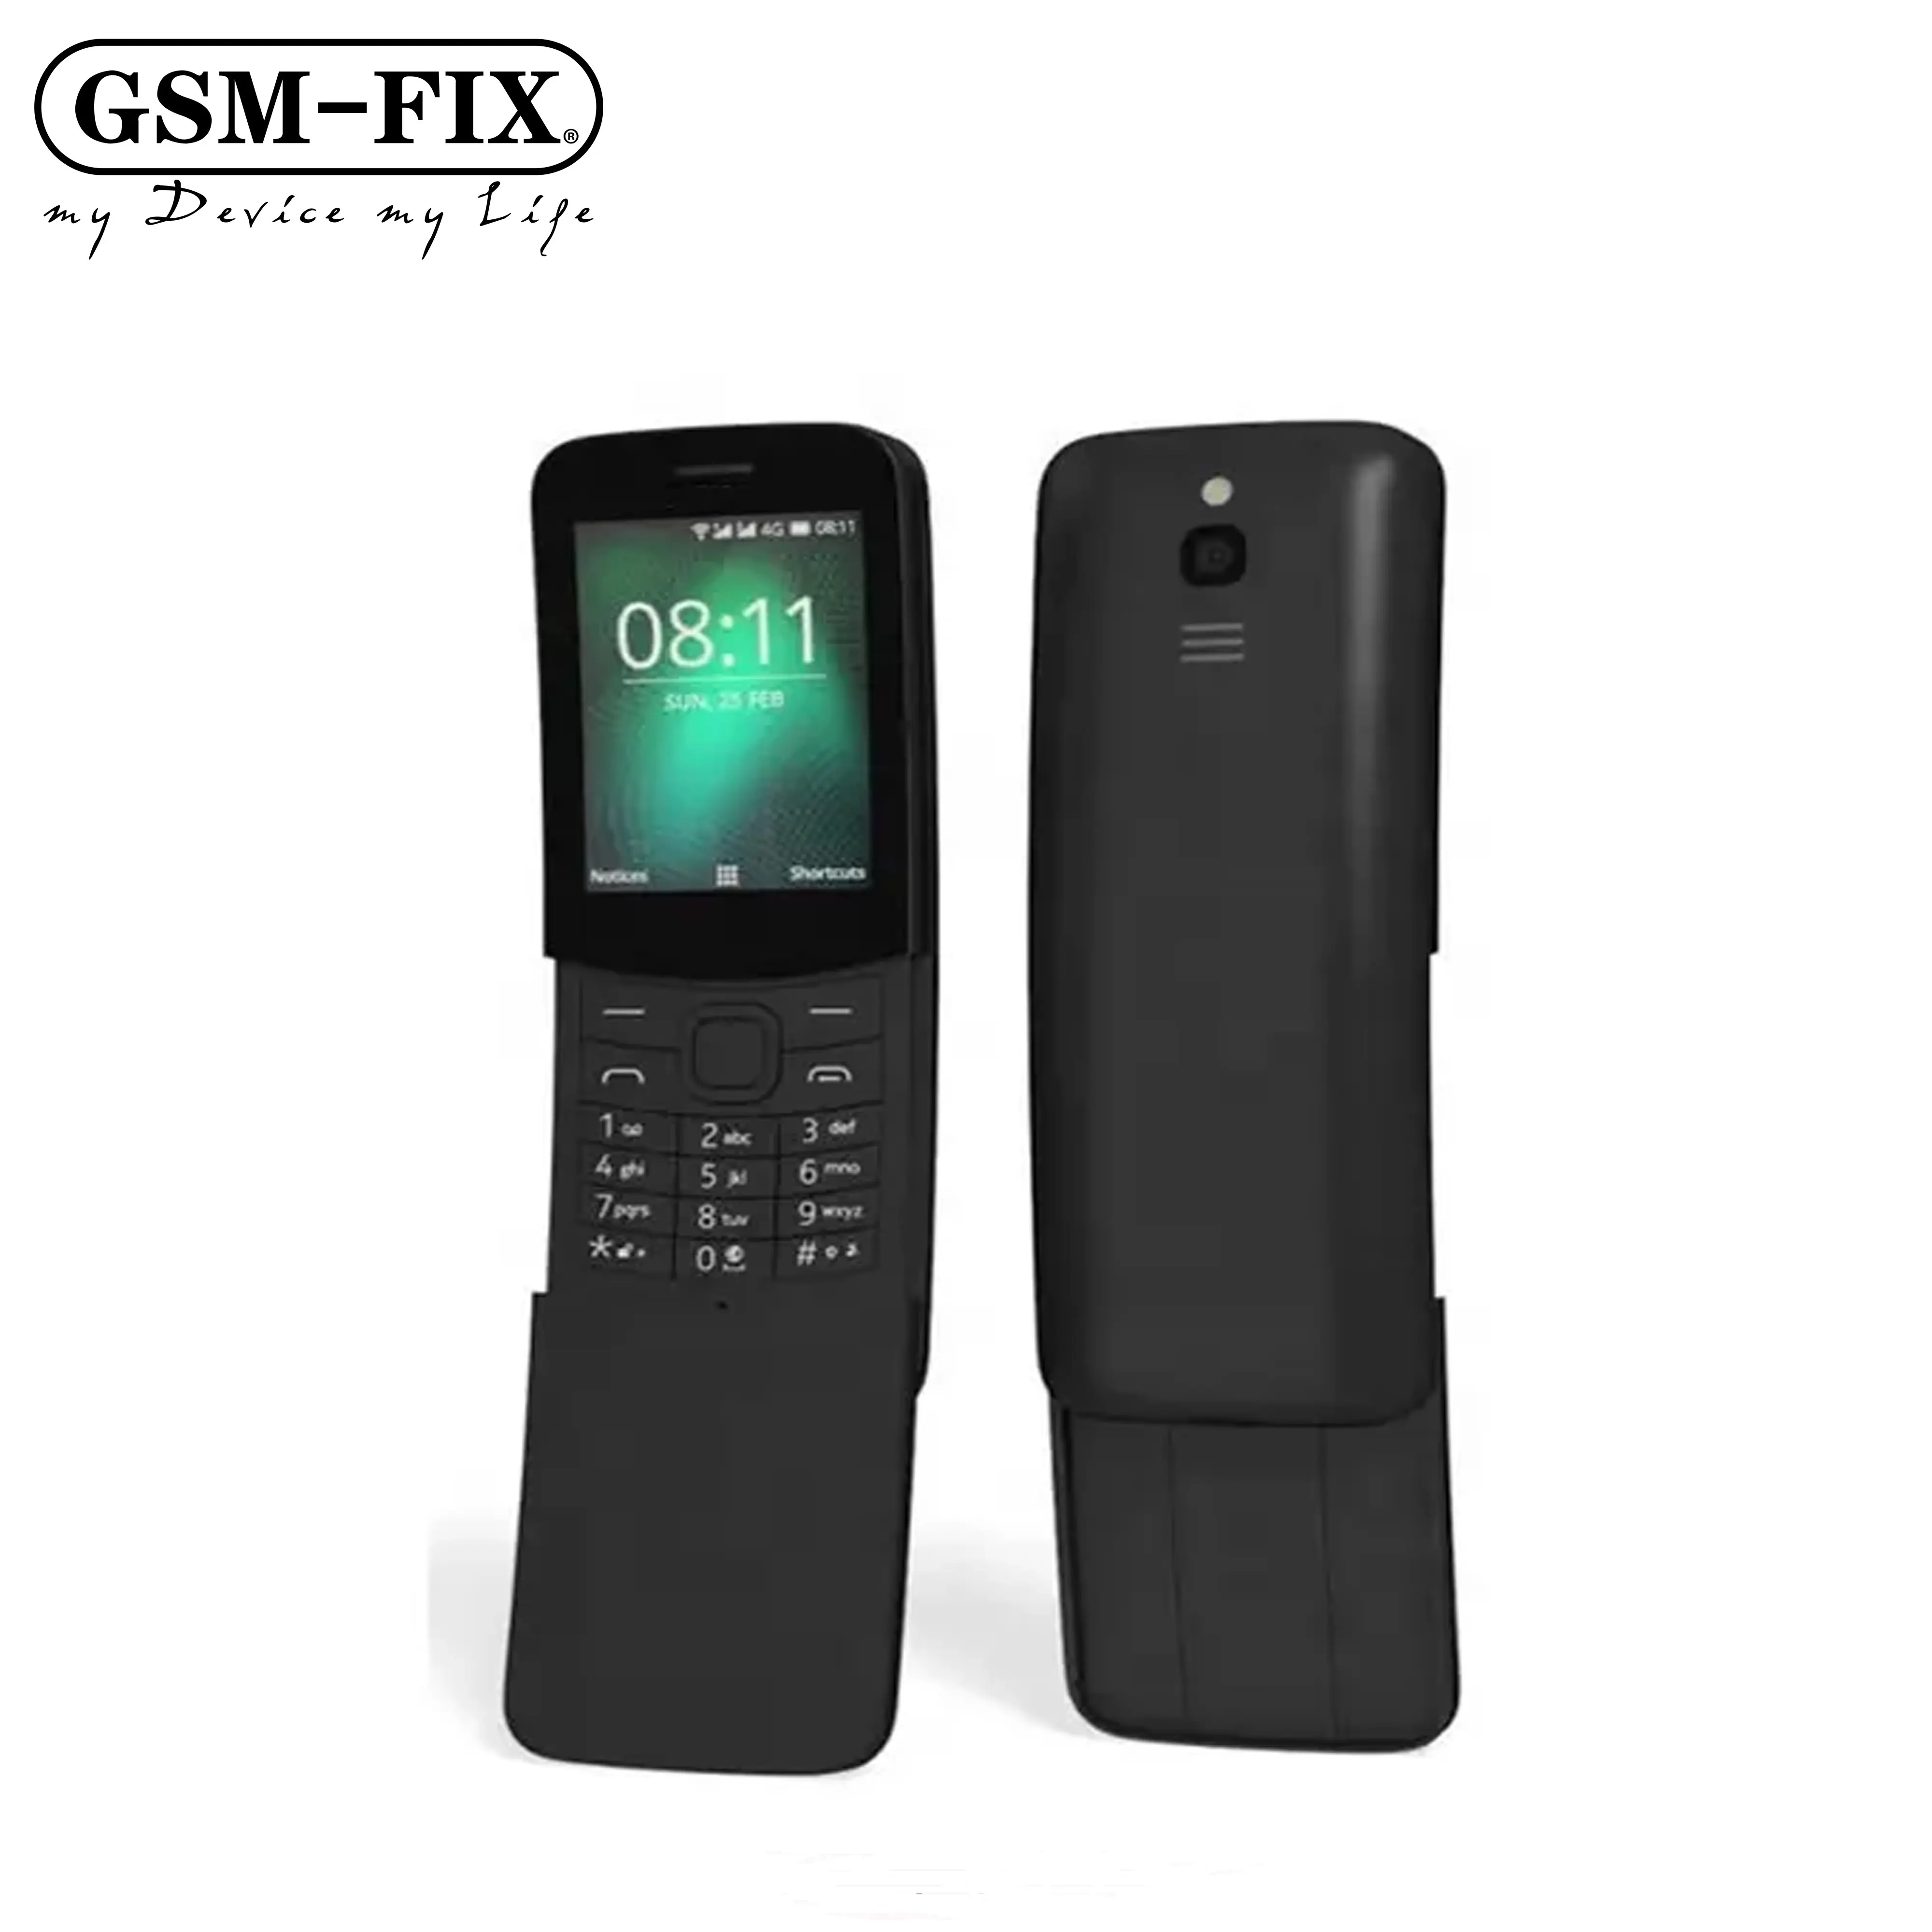 नोकिया 8110 के लिए 4G सर्वश्रेष्ठ खरीदें GSM-FIX मूल फैक्टरी खुला सुपर सस्ते क्लासिक स्लाइडर मोबाइल सेल फोन